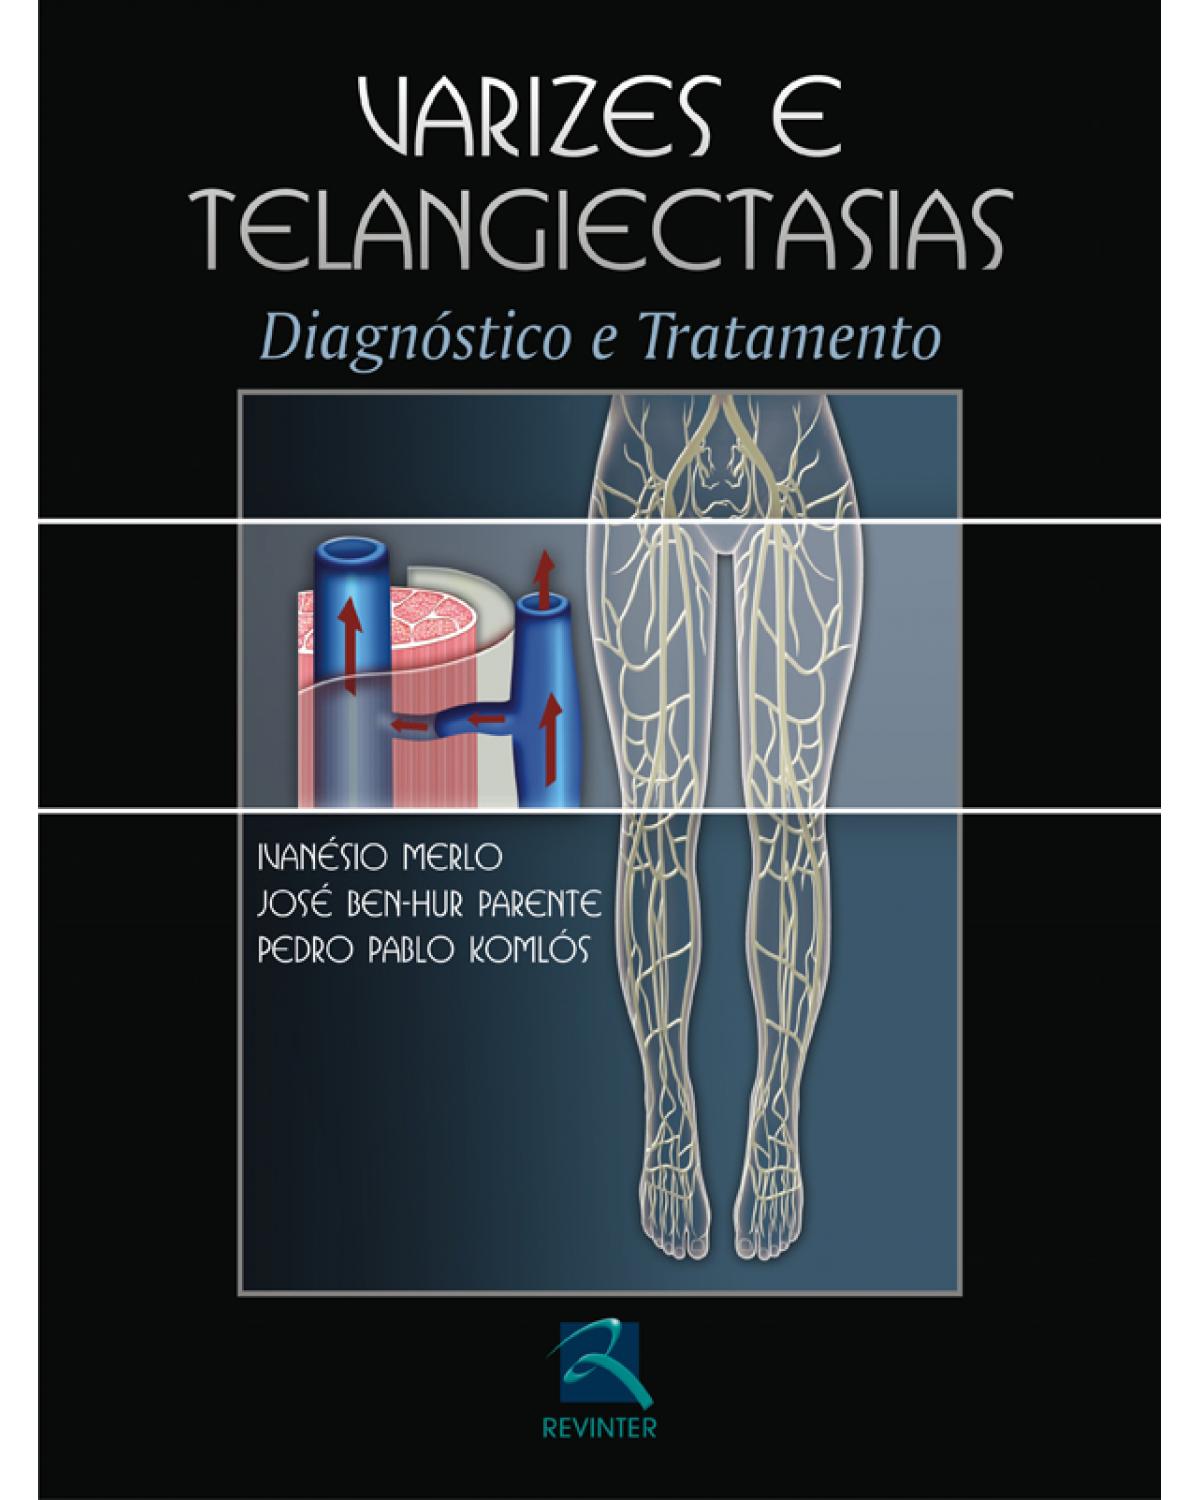 Varizes e telangiectasias - diagnóstico e tratamento - 1ª Edição | 2006